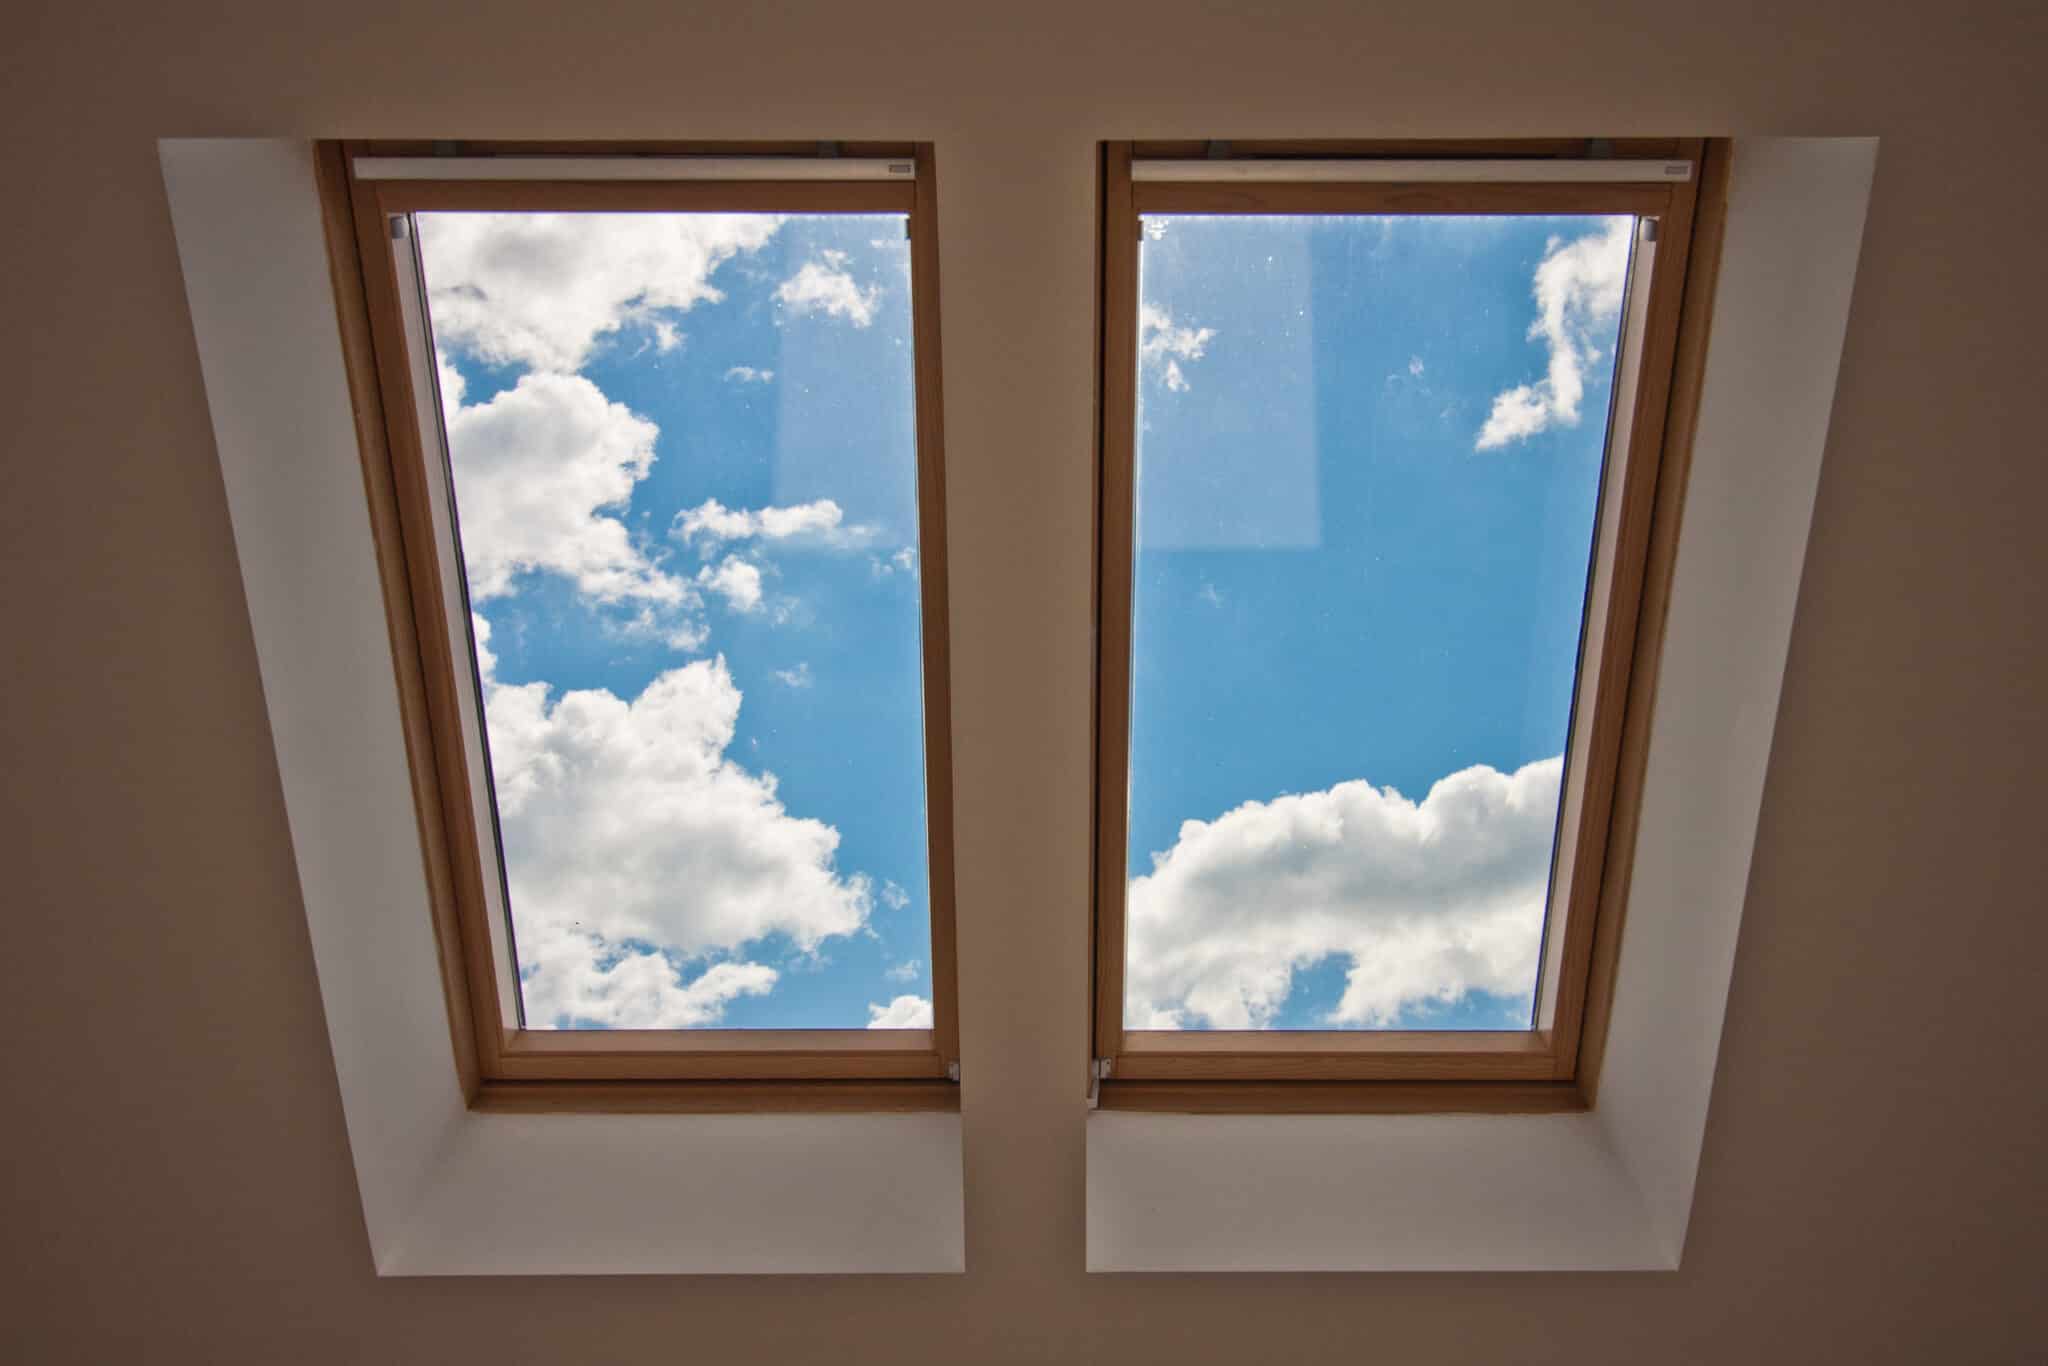 The sky through a skylight in a house